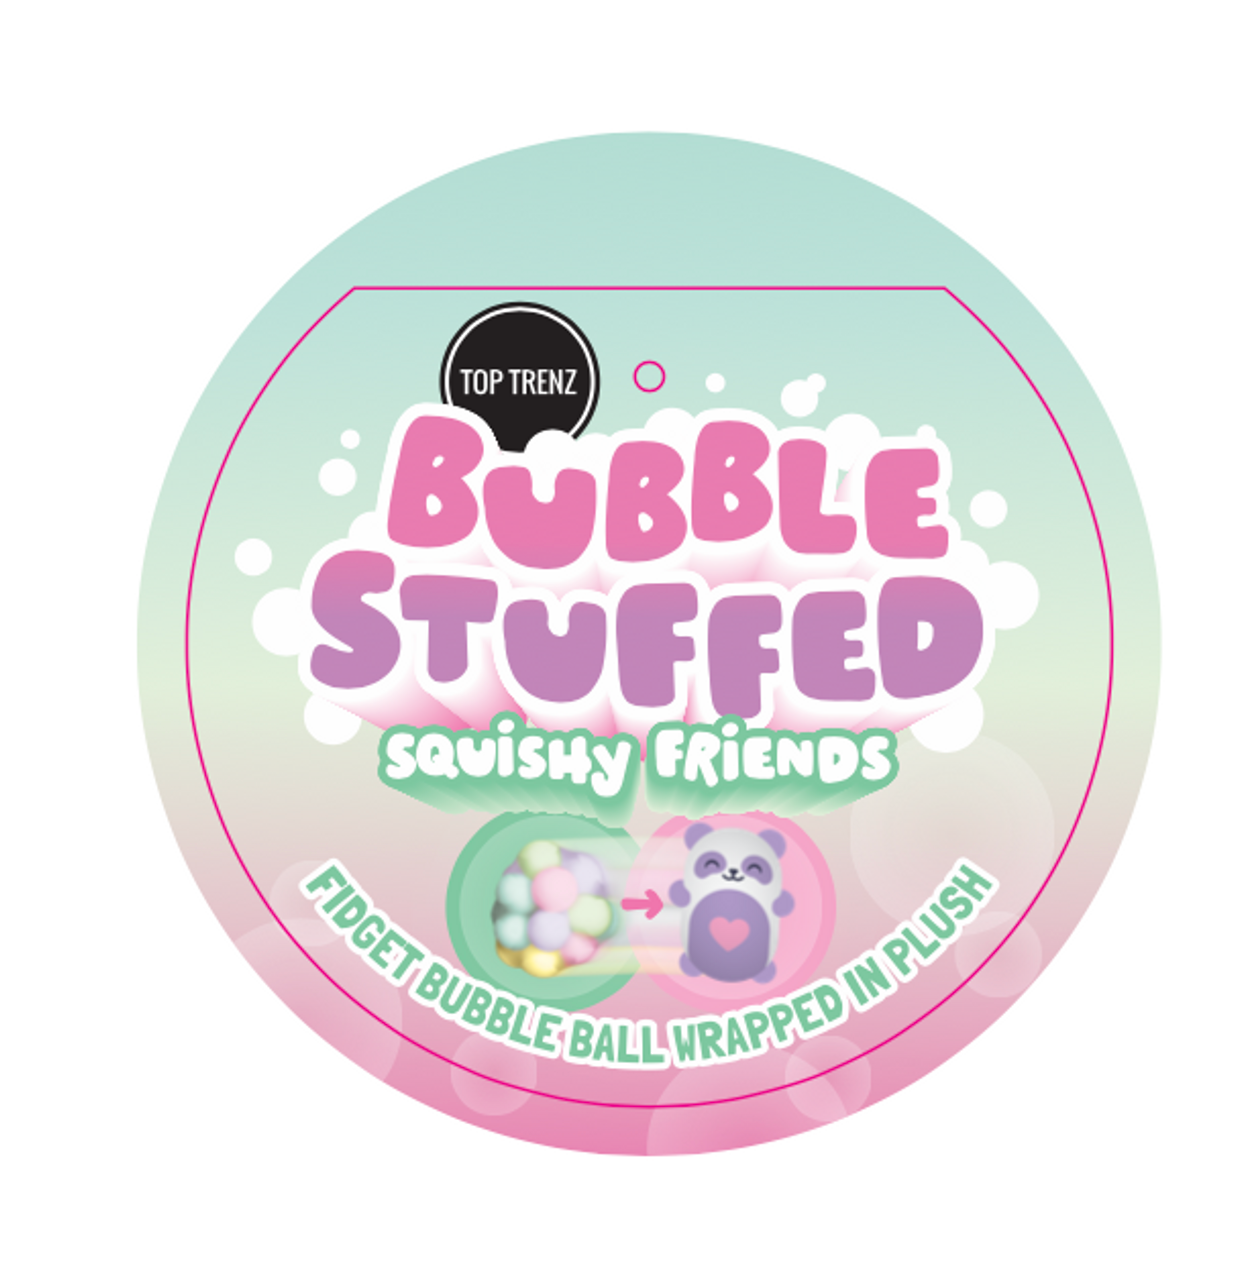 Bubble Friends